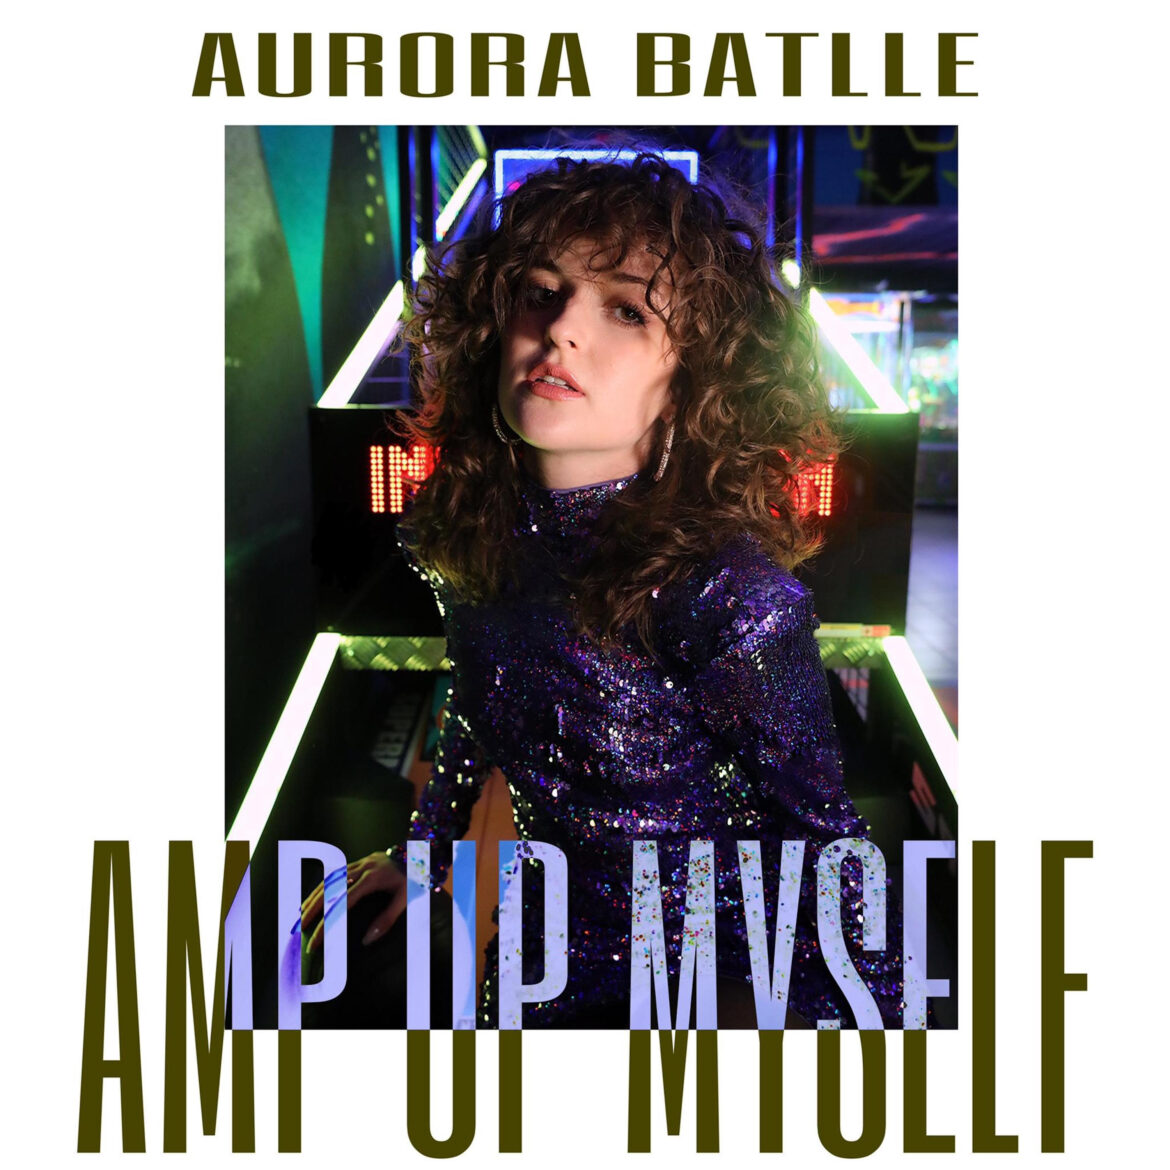 Amp up myself, brano d’esordio della cantante Aurora Batlle